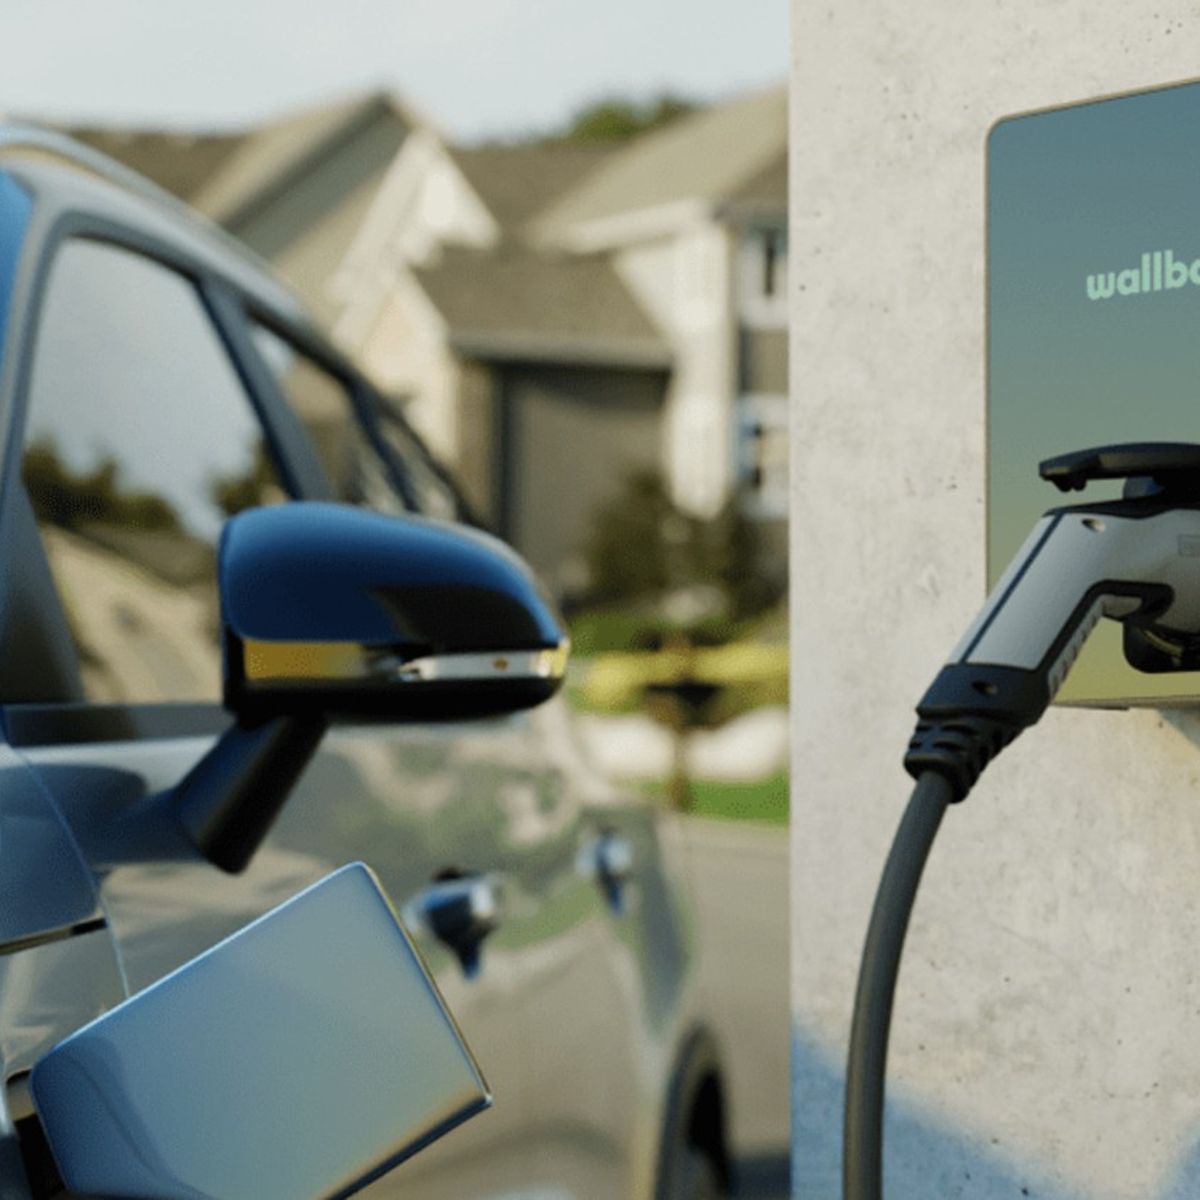 Cargador de coches eléctricos: ¿cómo instalártelo en casa? - Autofácil